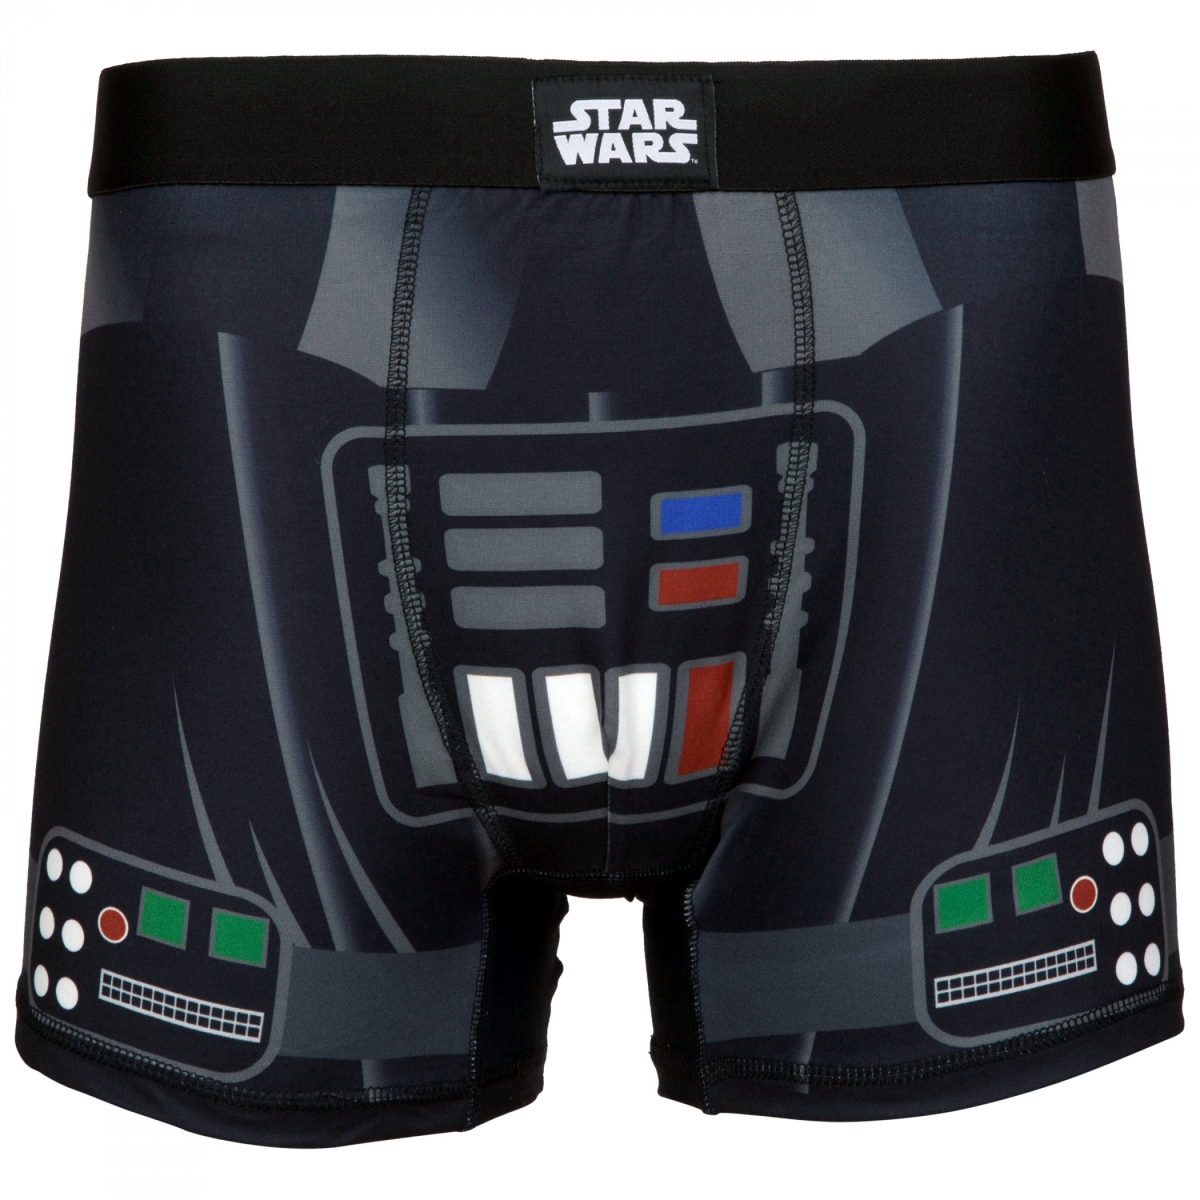 851928-um-32-34  Darth Vader Cosplay Mens Underwear Boxer Briefs - Medium - 32-34 -  Star Wars, 851928-um(32-34)